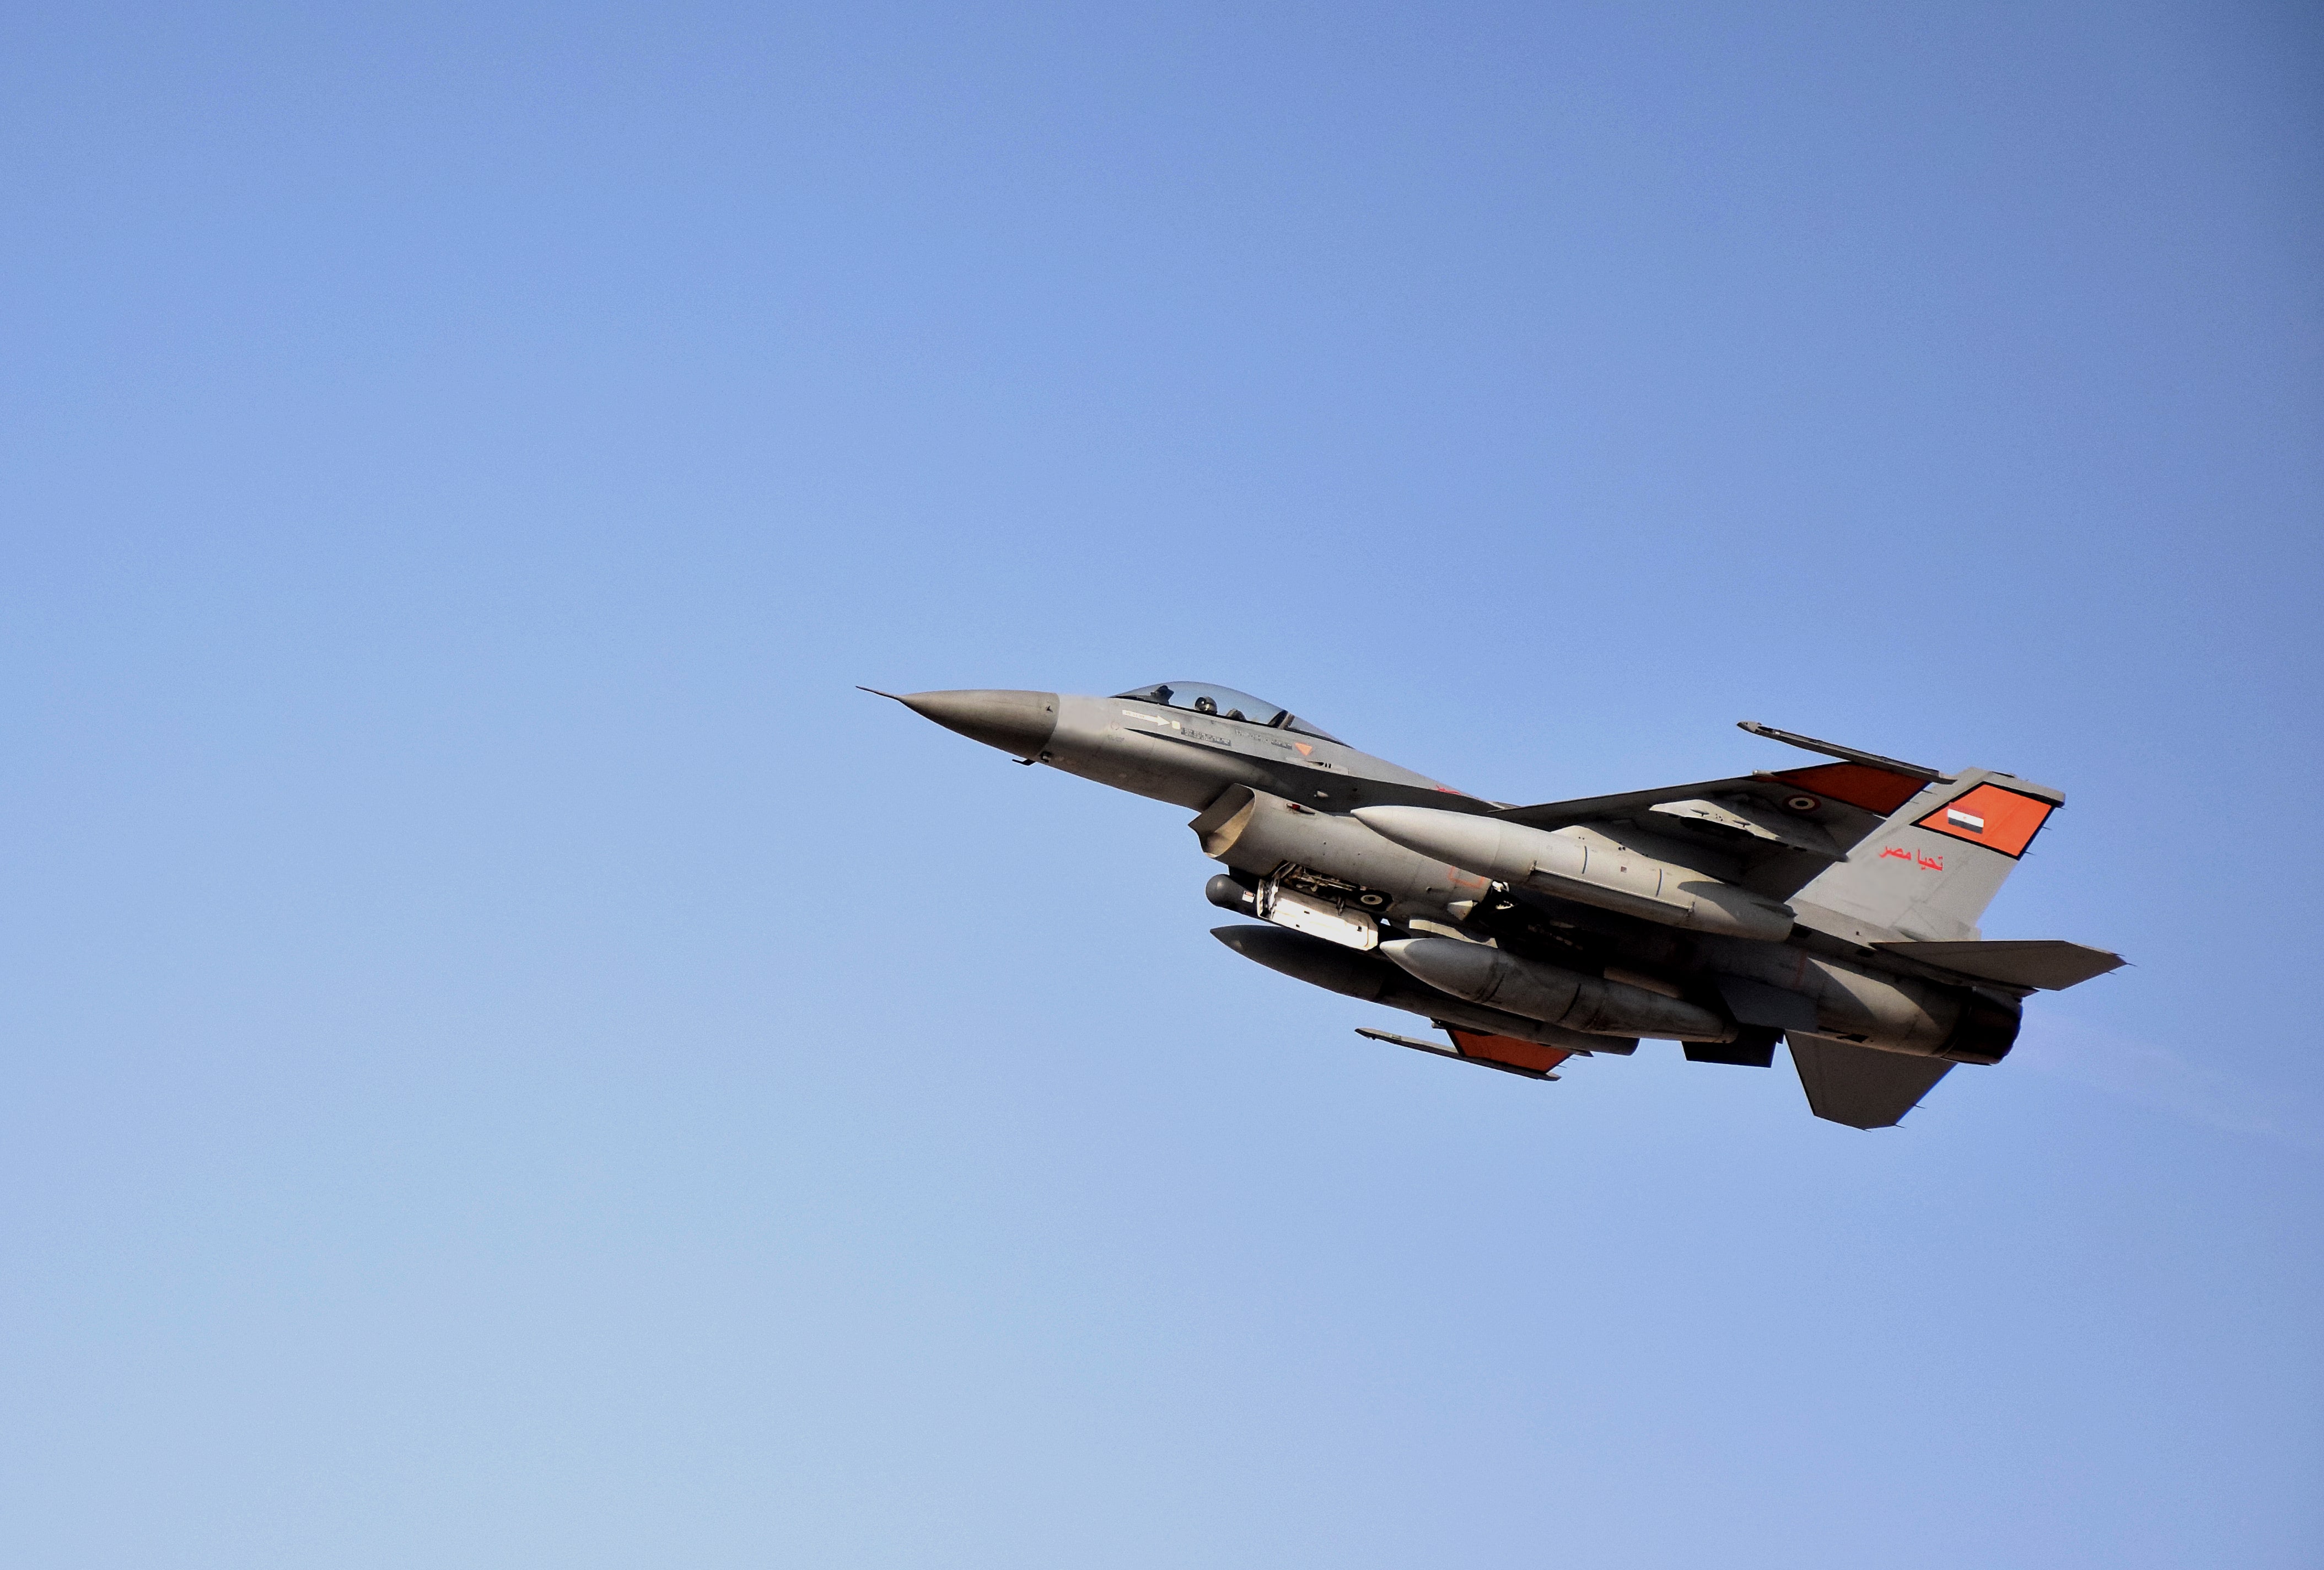 القوات الجوية المصرية واليونانية تنفذان تدريباً جوياً بإحدى القواعد اليونانية